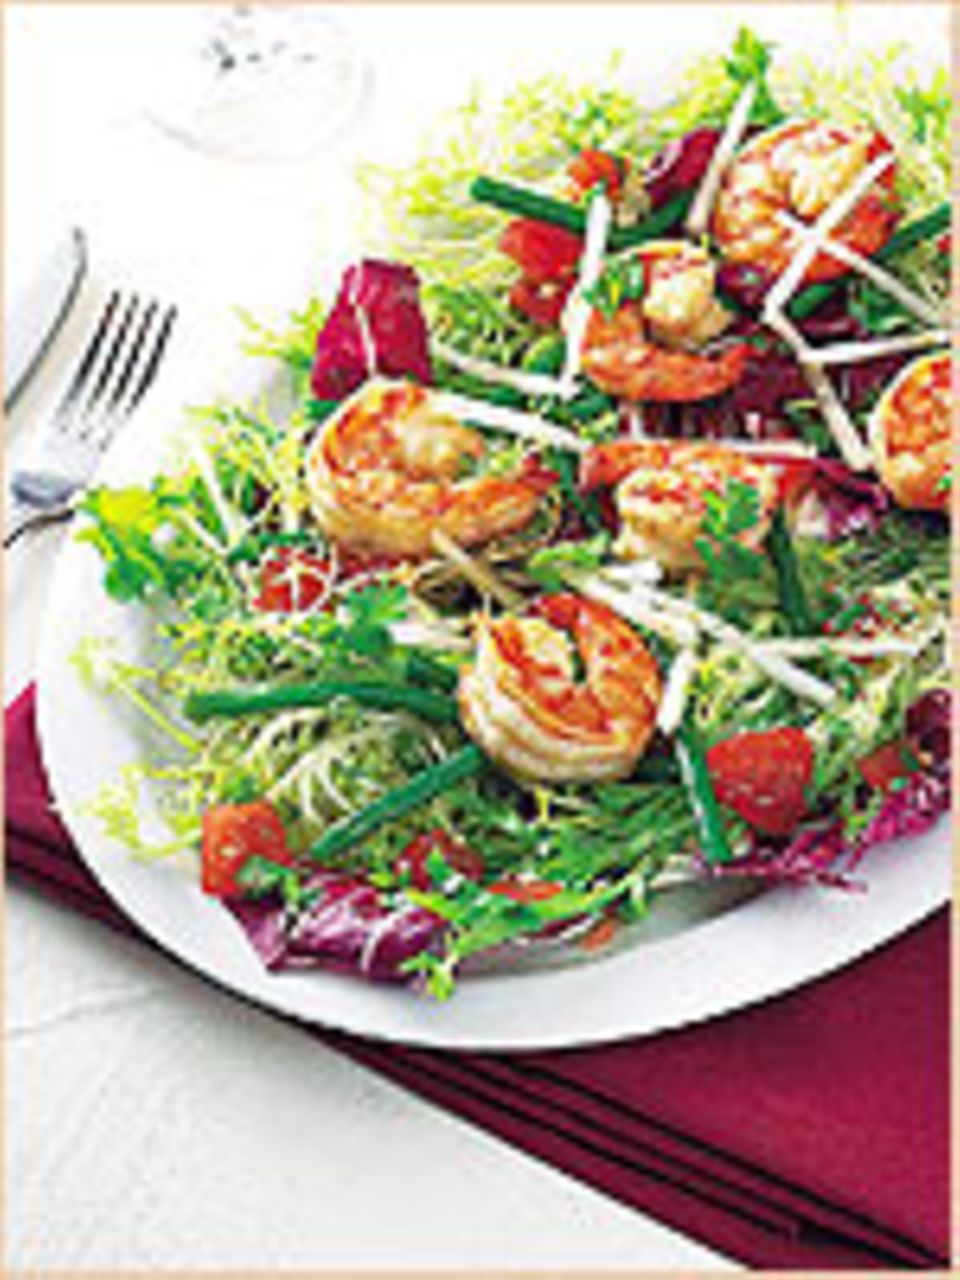 Salat mit gegrillten Garnelen - so sommerlich!